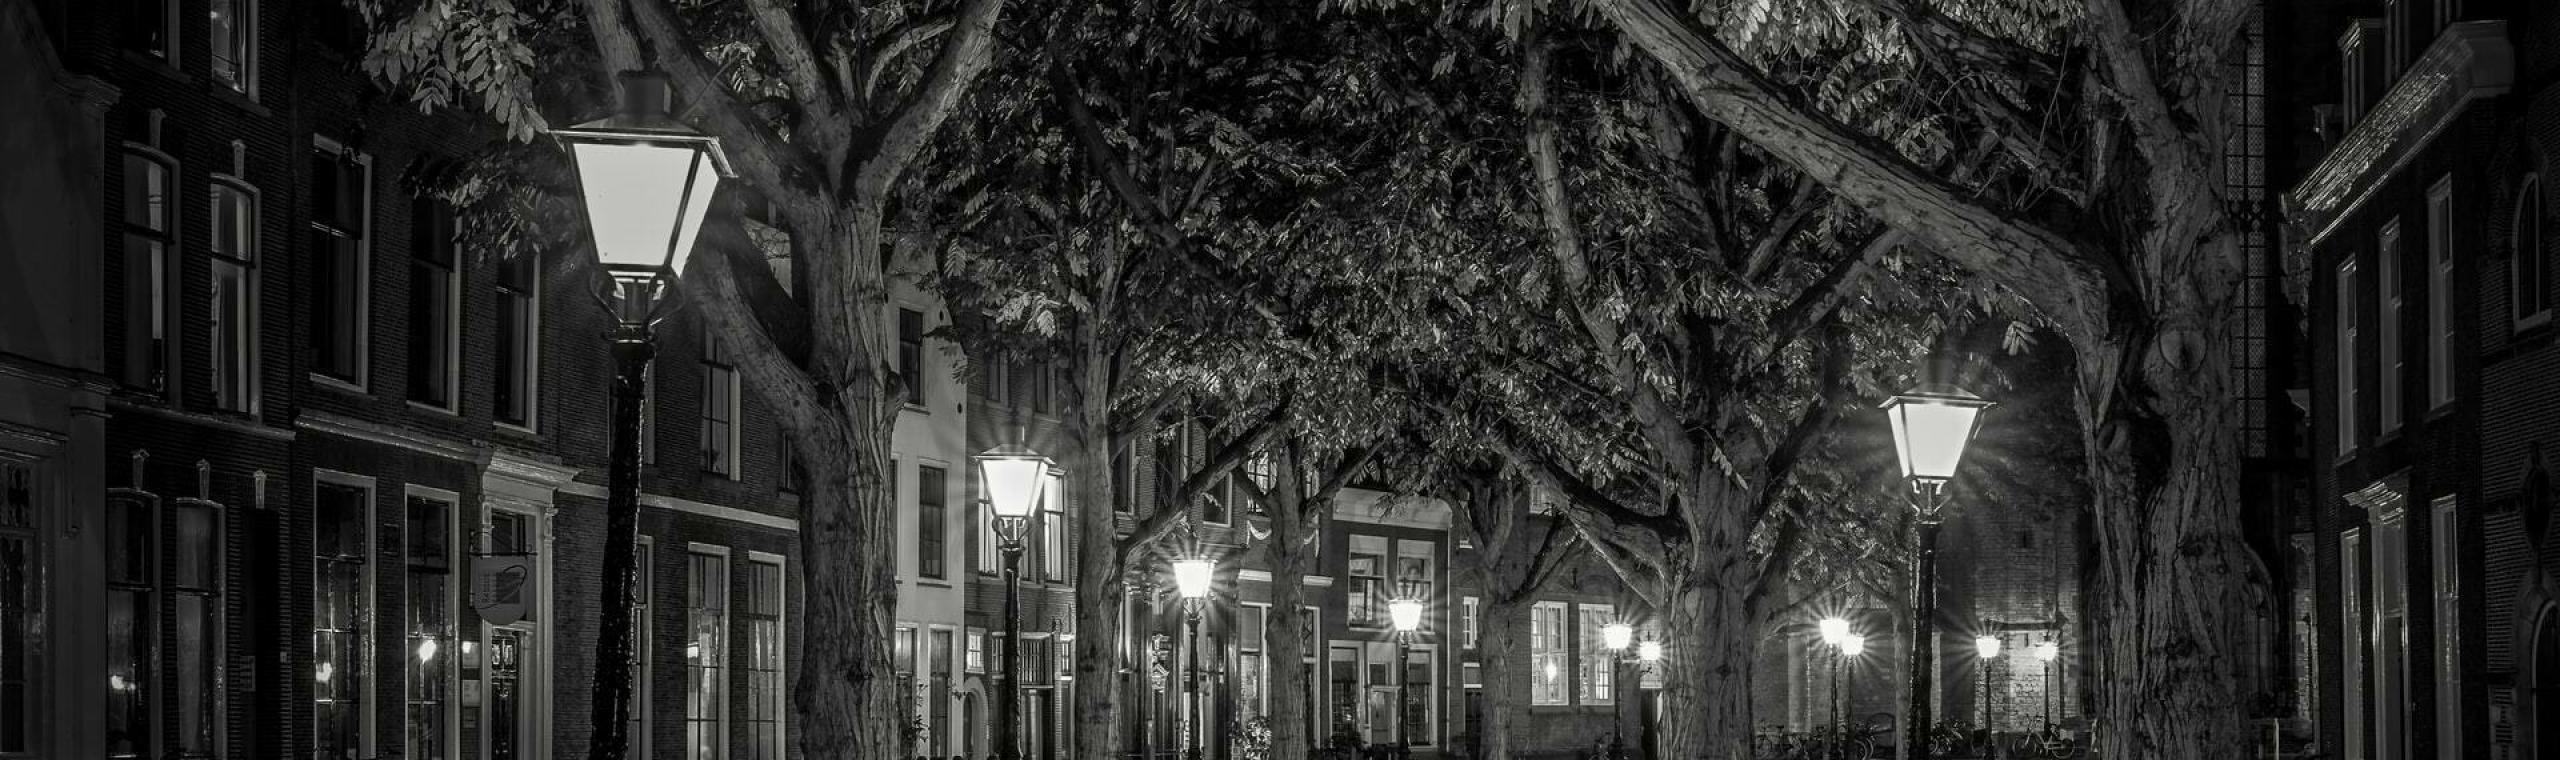 Leeg en donker straatbeeld in Leiden